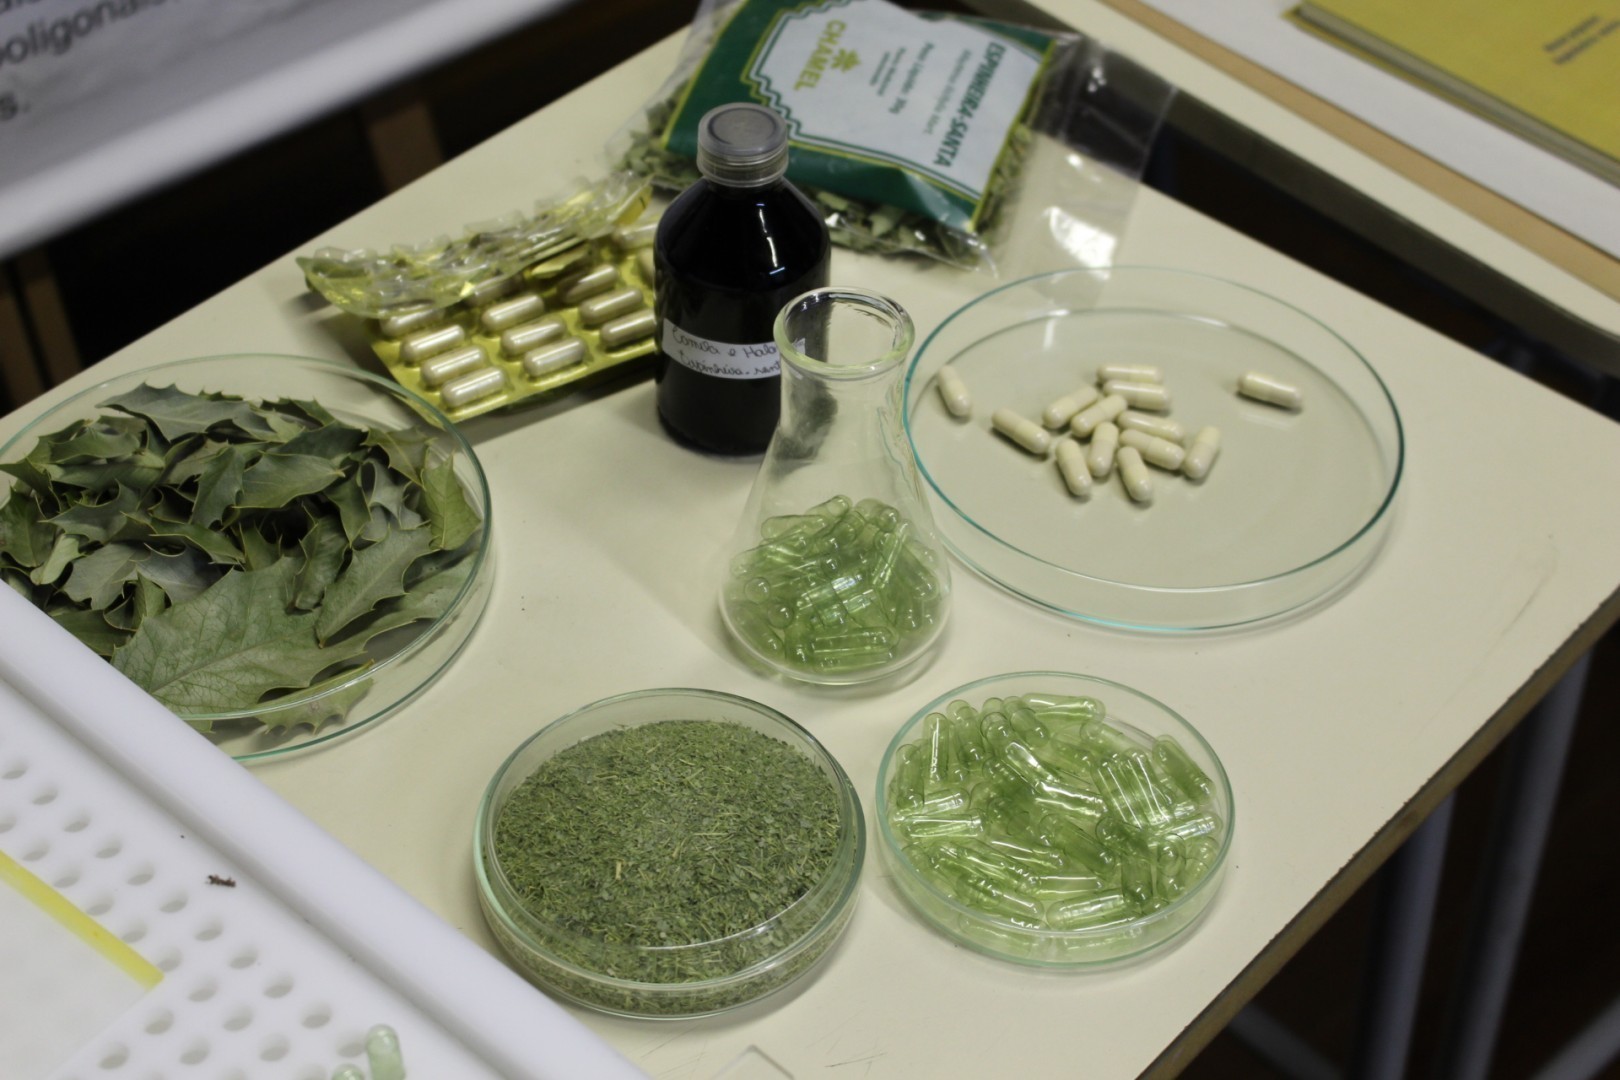 Exposição apresentou alternativas de medicamentos que podem ser extraídos das plantas 